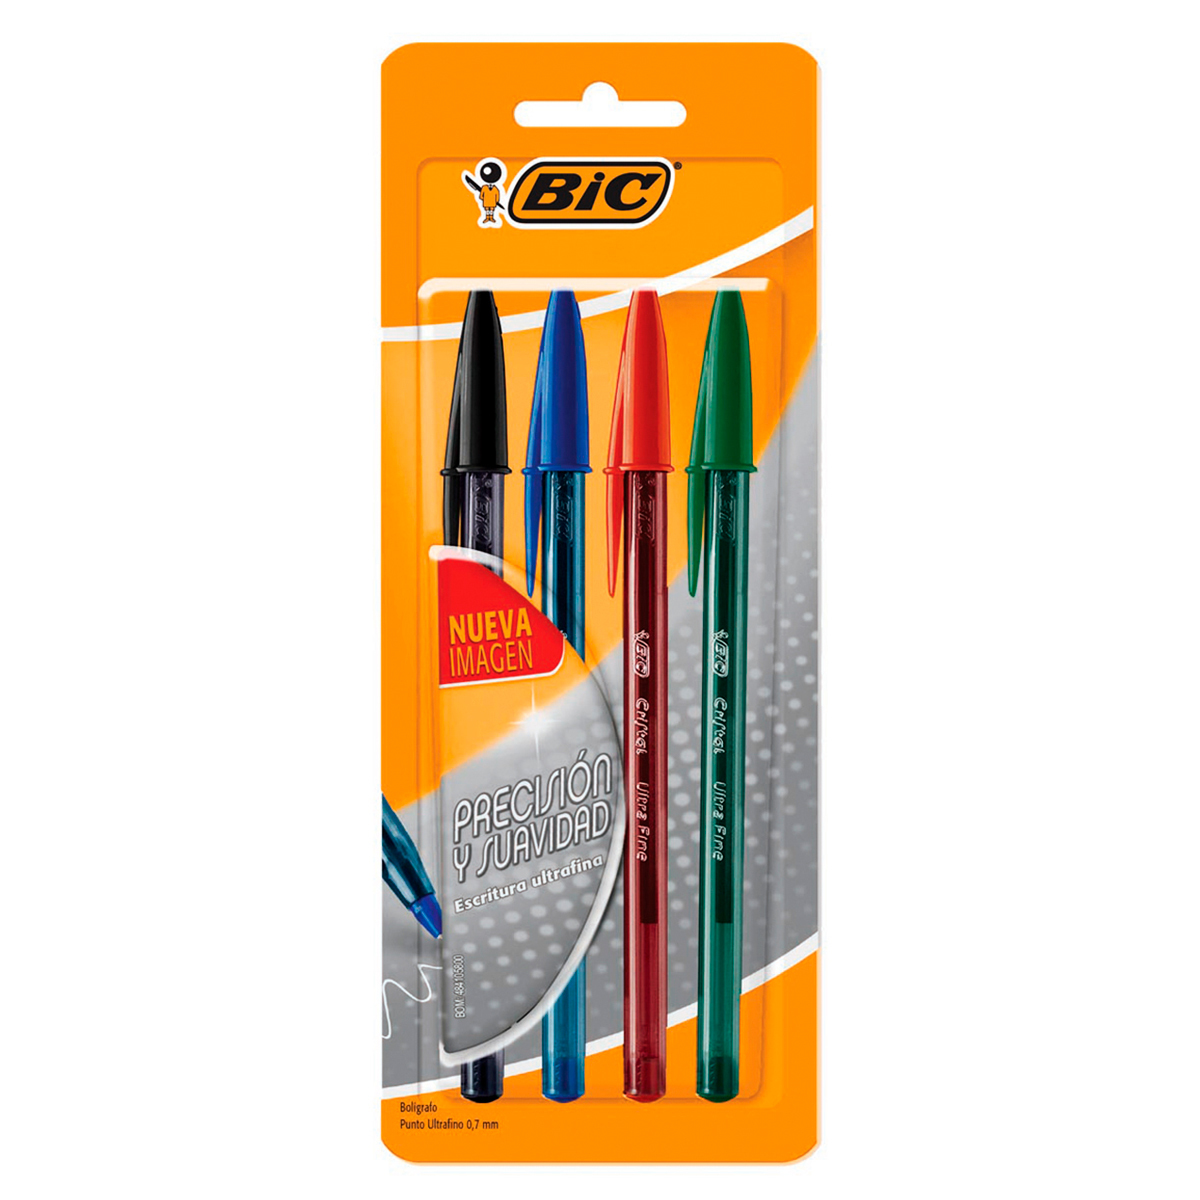 Los clásicos y divertidos bolígrafos BIC regresan con una amplia oferta  para esta vuelta a clases